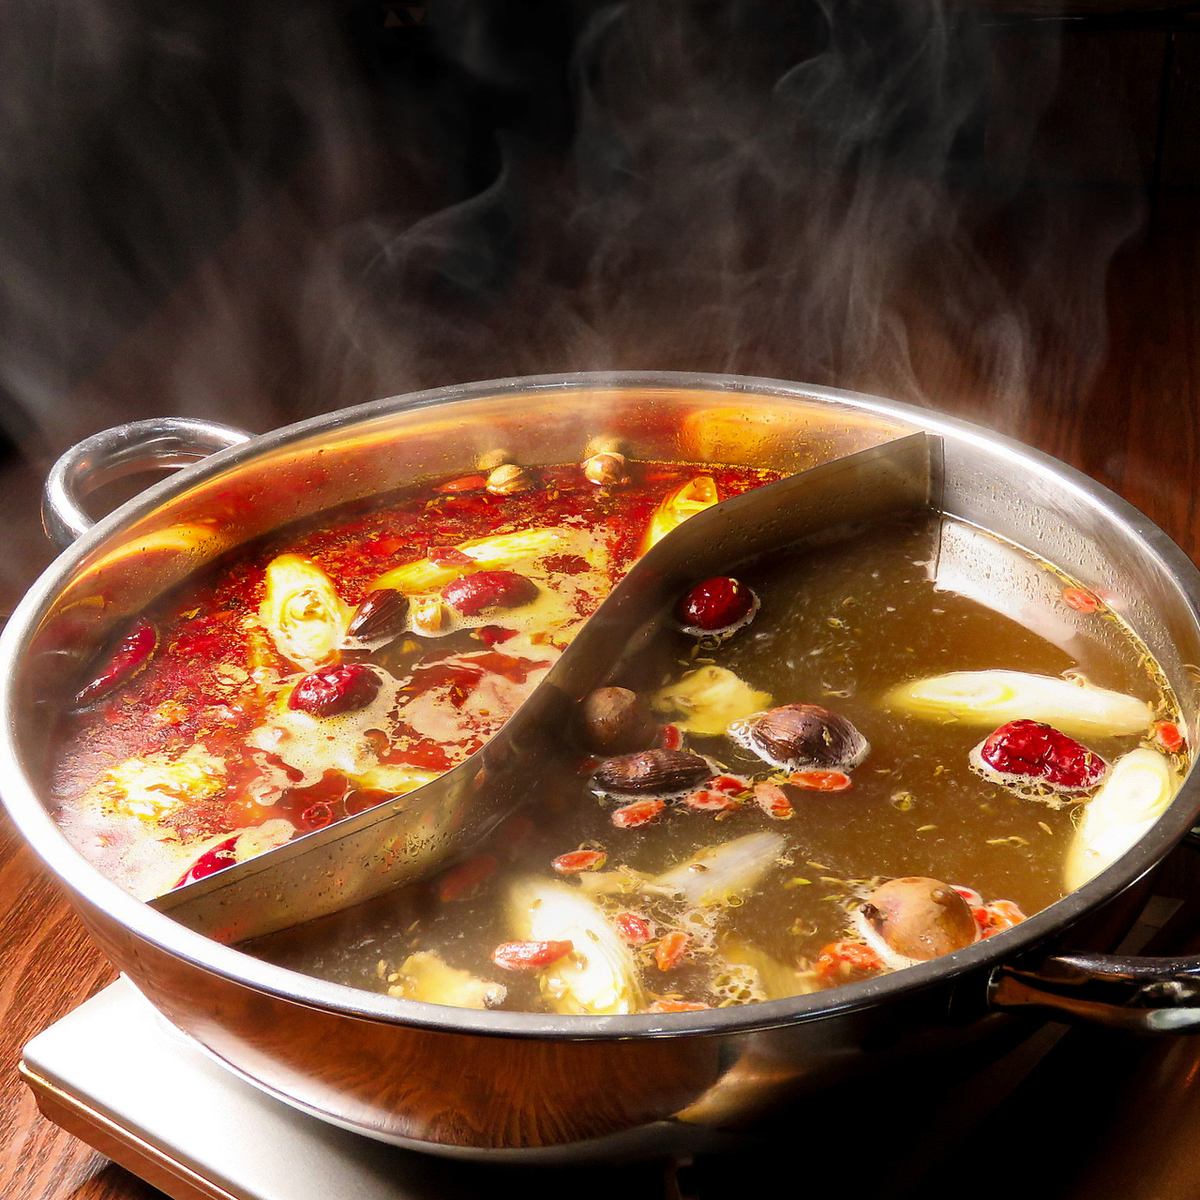 You can enjoy a real hot pot!